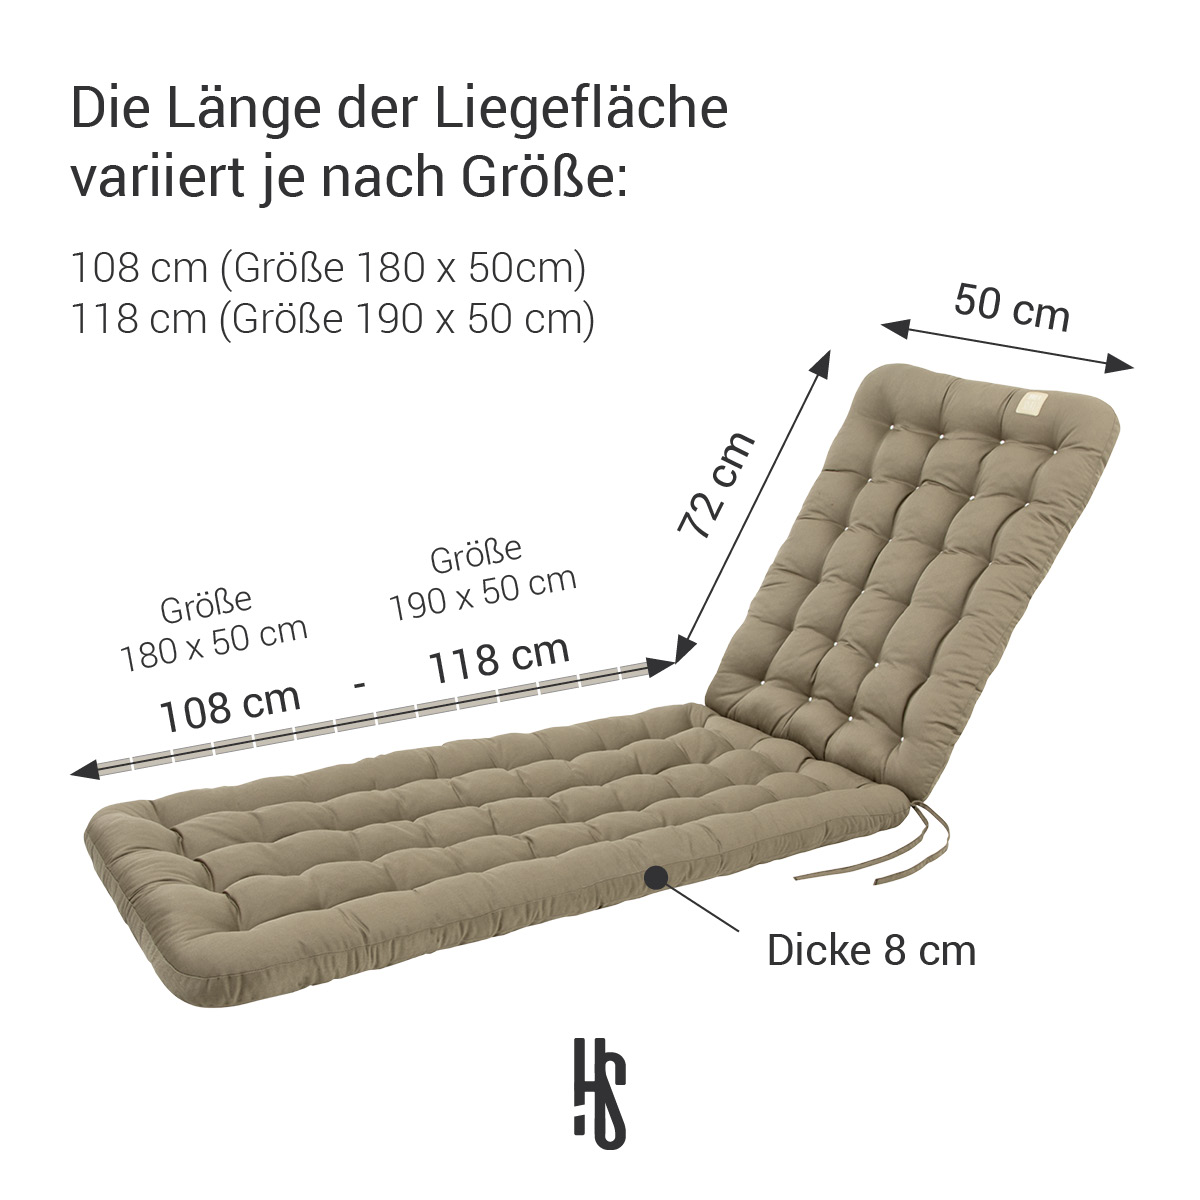 Deckchair Auflage Goldbraun in 180x50 cm / 190x50 cm, Polsterung 8 cm Dick mit Rückenteil 72 cm lang | orthopädische Liegefläche | HAVE A SEAT Living